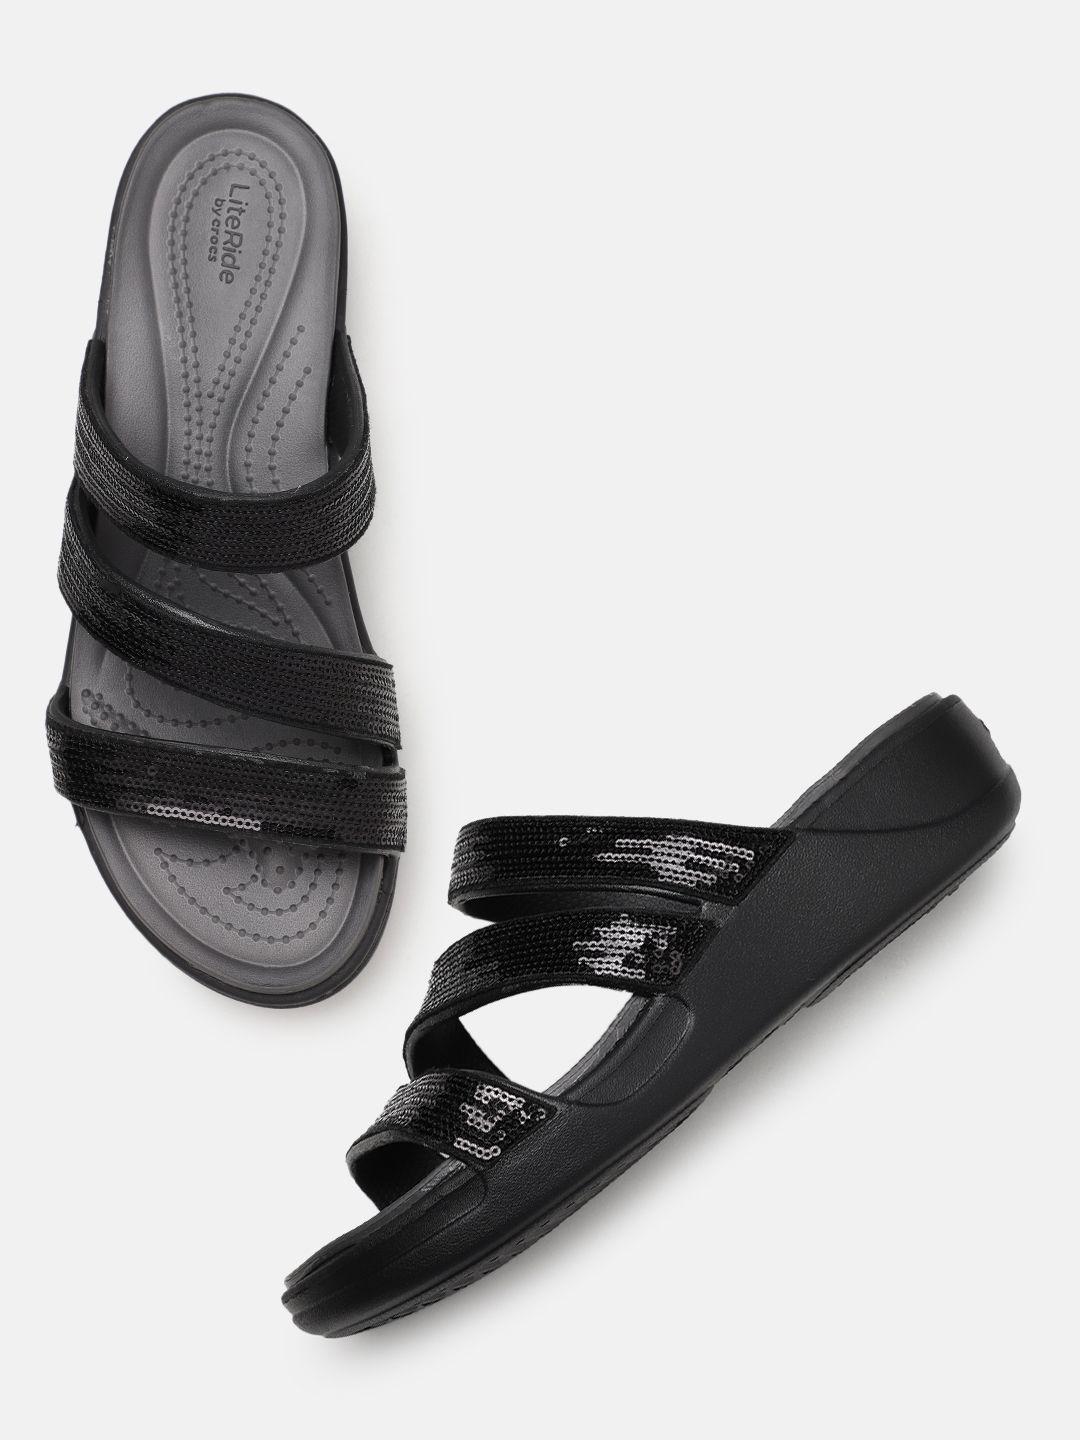 crocs sequin embellished comfort heels